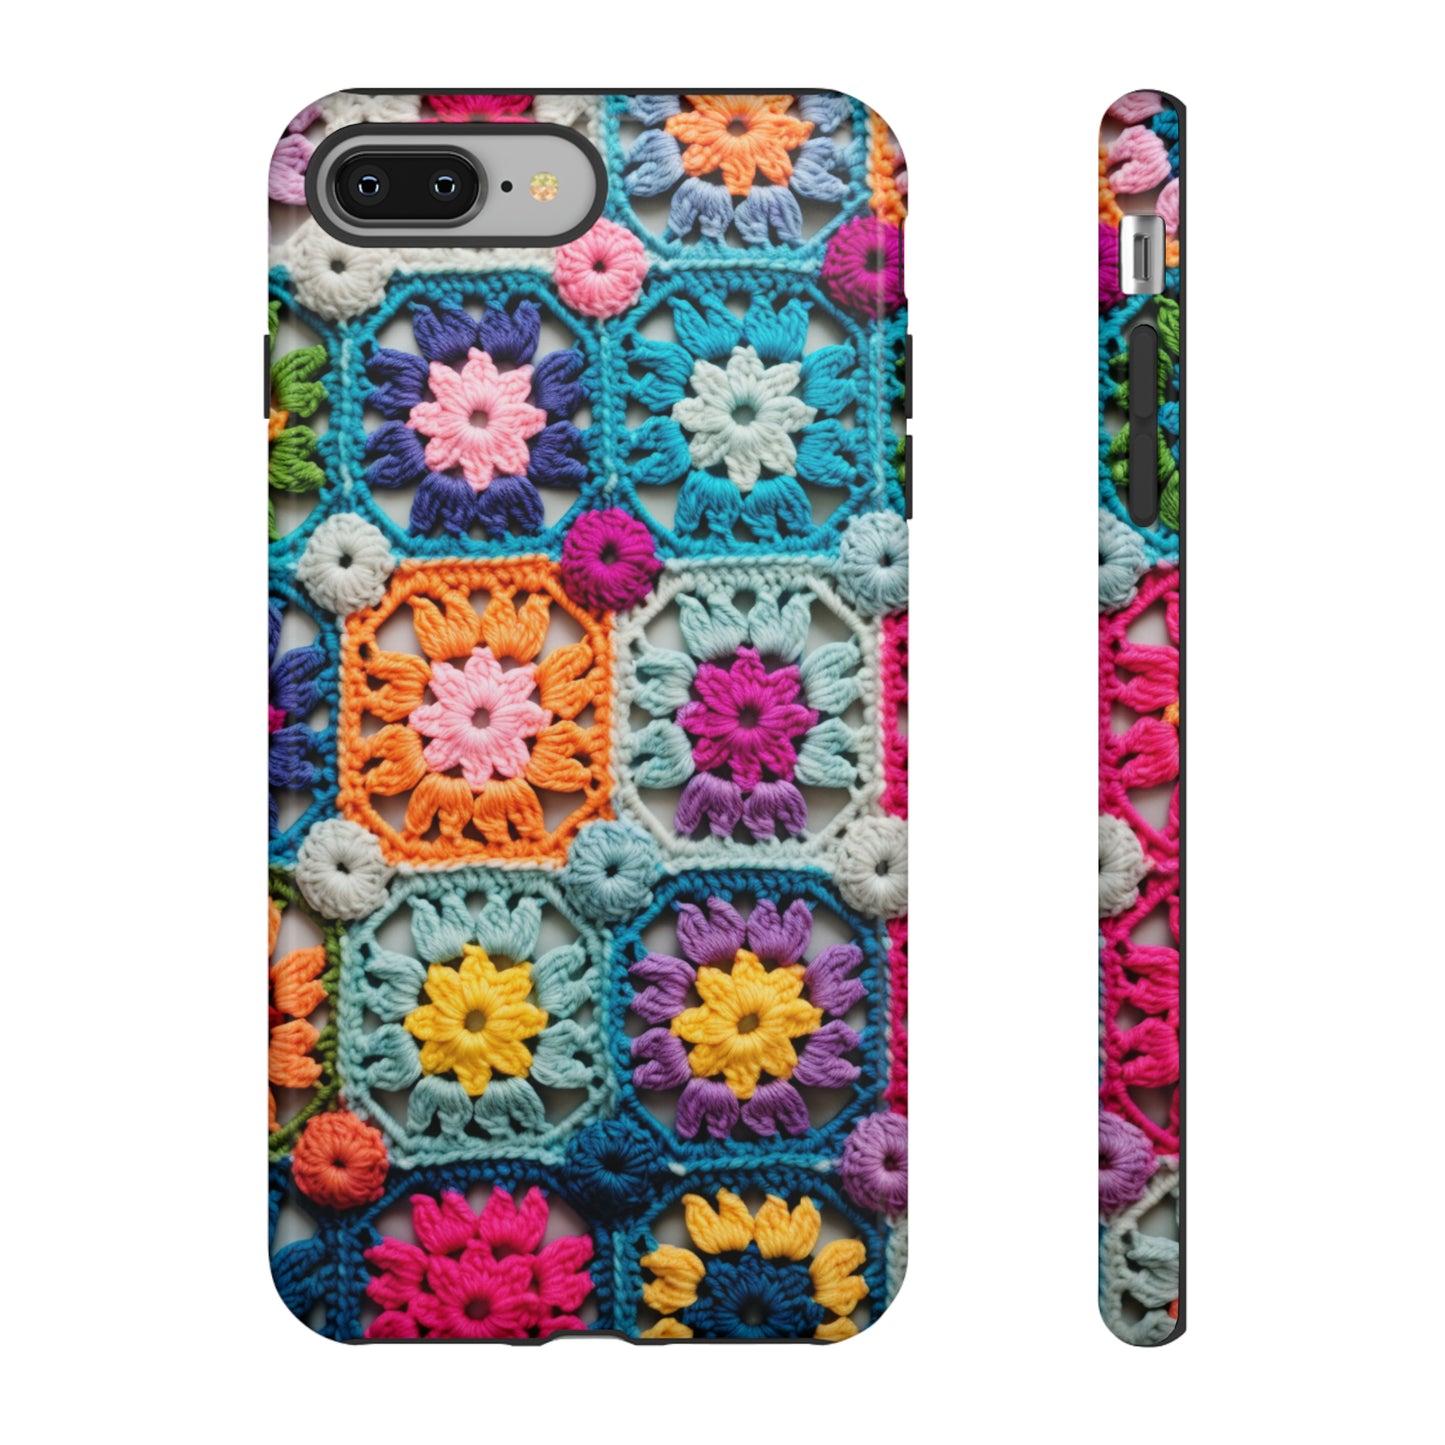 Pixel phone case with cozy retro crochet design